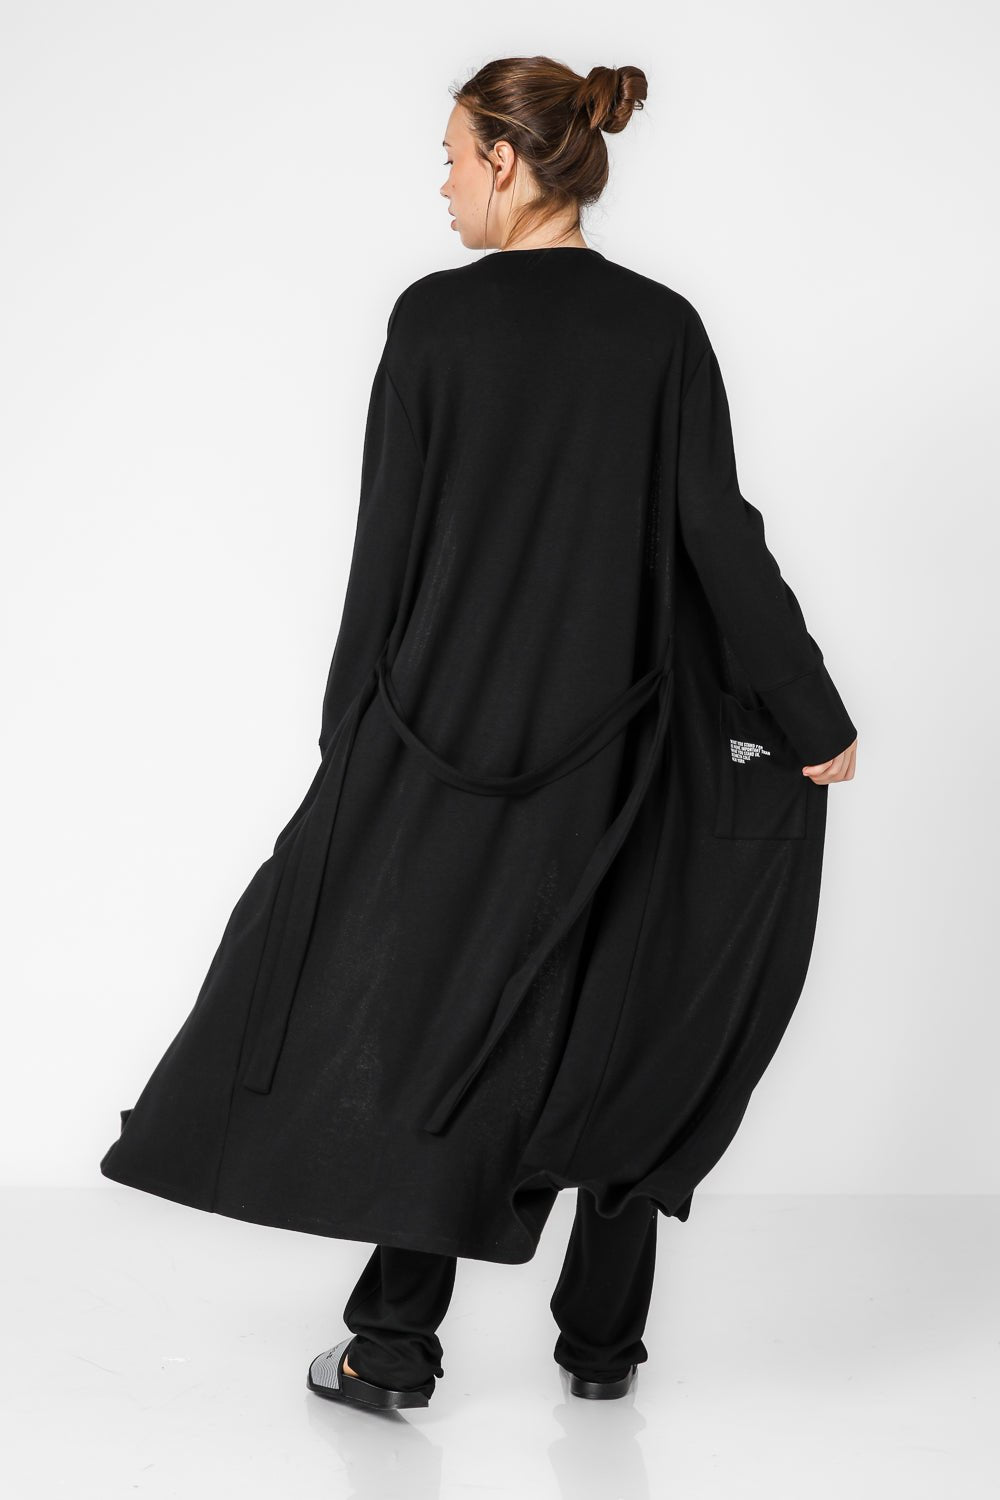 KENNETH COLE - קרדיגן לאונג' ארוך בצבע שחור עם הדפס לוגו - MASHBIR//365